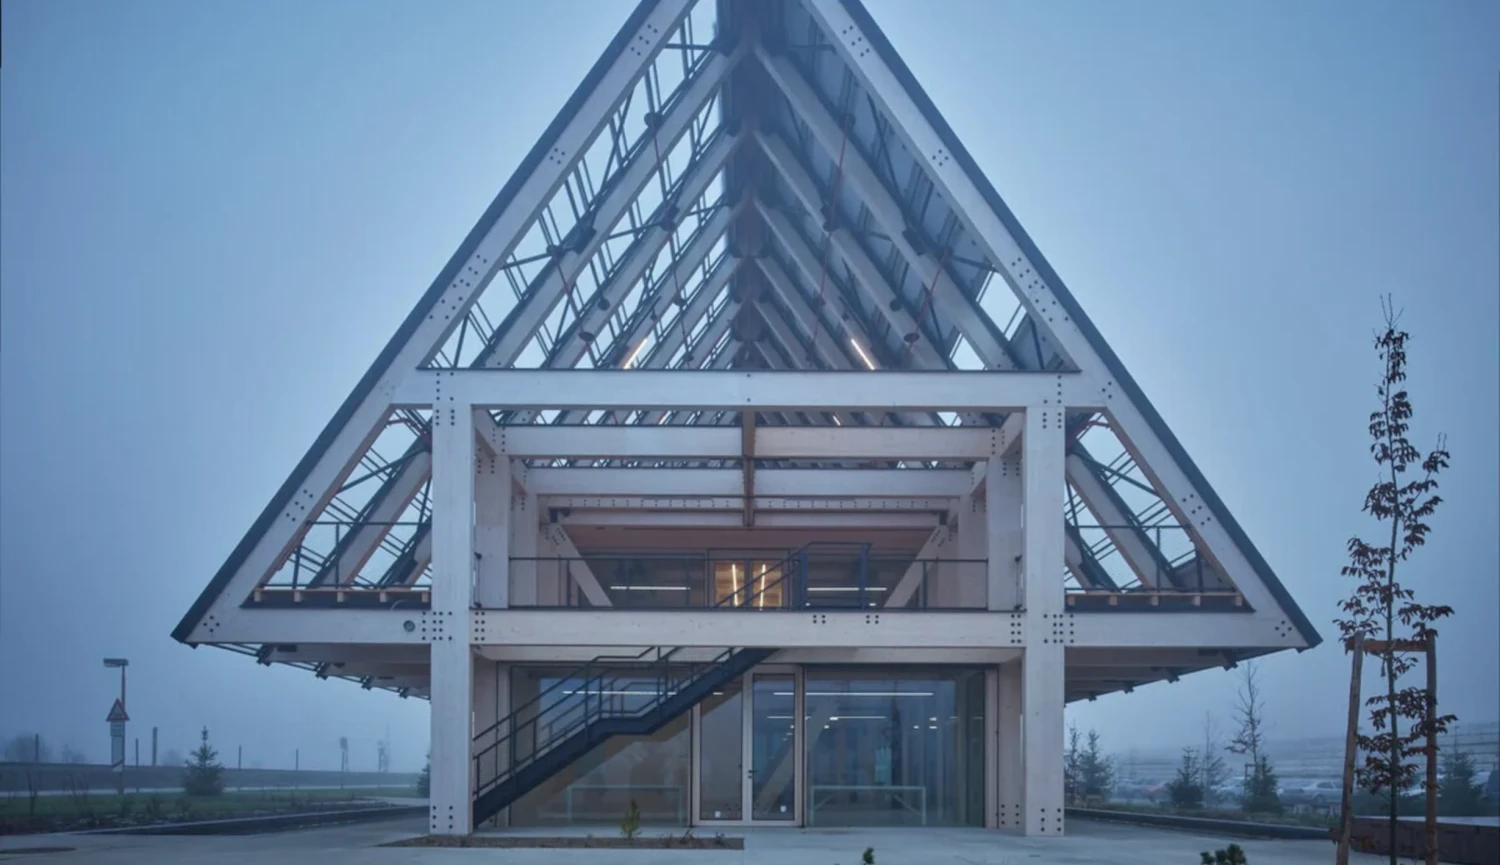 Dřevěné Áčko boduje. Sídlo Kloboucké lesní získalo cenu za architekturu